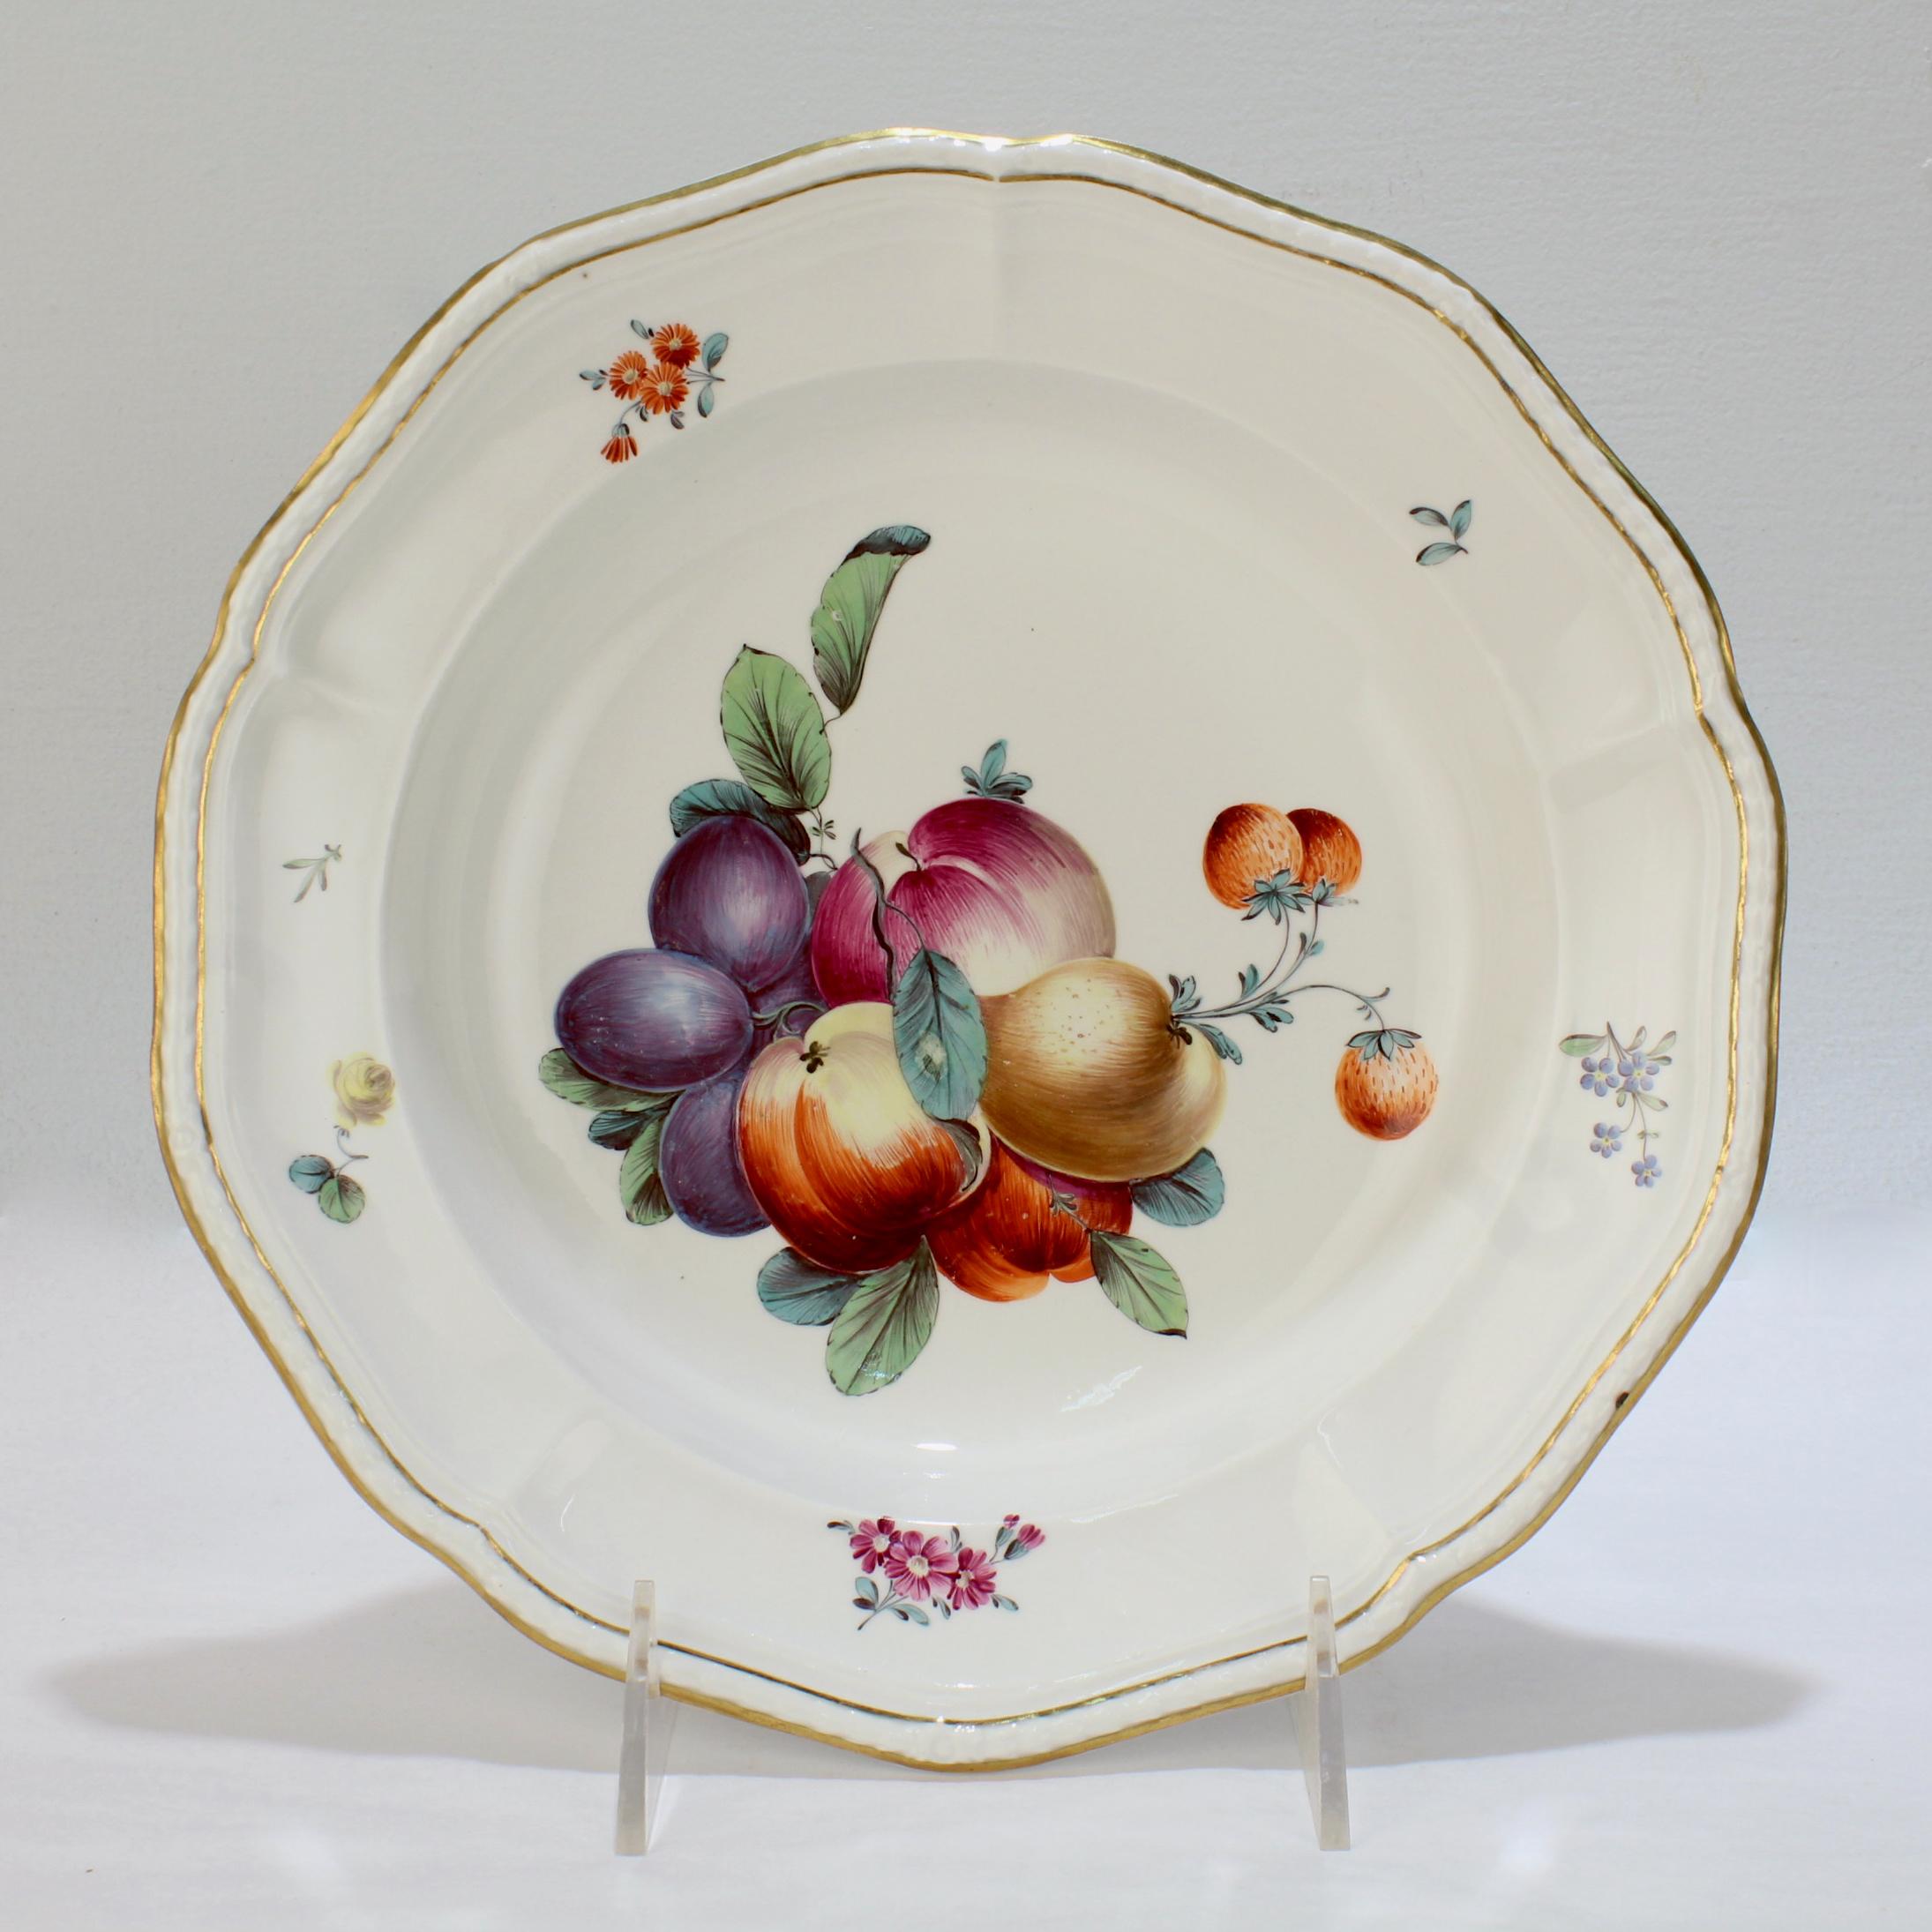 Eine sehr schöne antike Porzellanschale aus dem 18. Jahrhundert.

Von Frankenthal zur Zeit Carl Theodors.

Die Schale ist mit einer Gruppe von Früchten aus polychromem Email verziert, der Rand ist mit Blumenranken verziert, der Rand ist